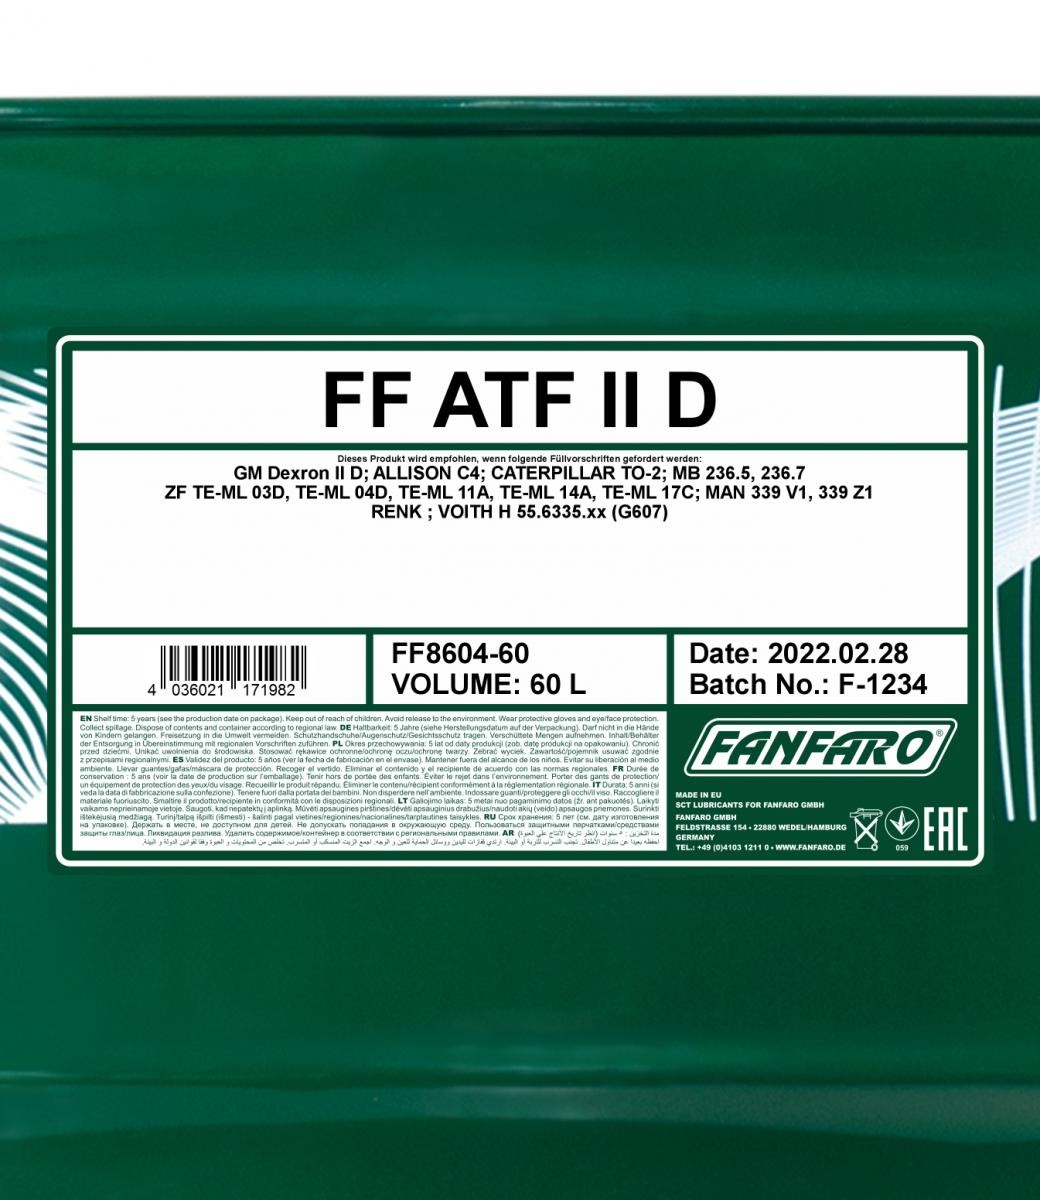 FANFARO Automatic transmission fluid FF8604-60